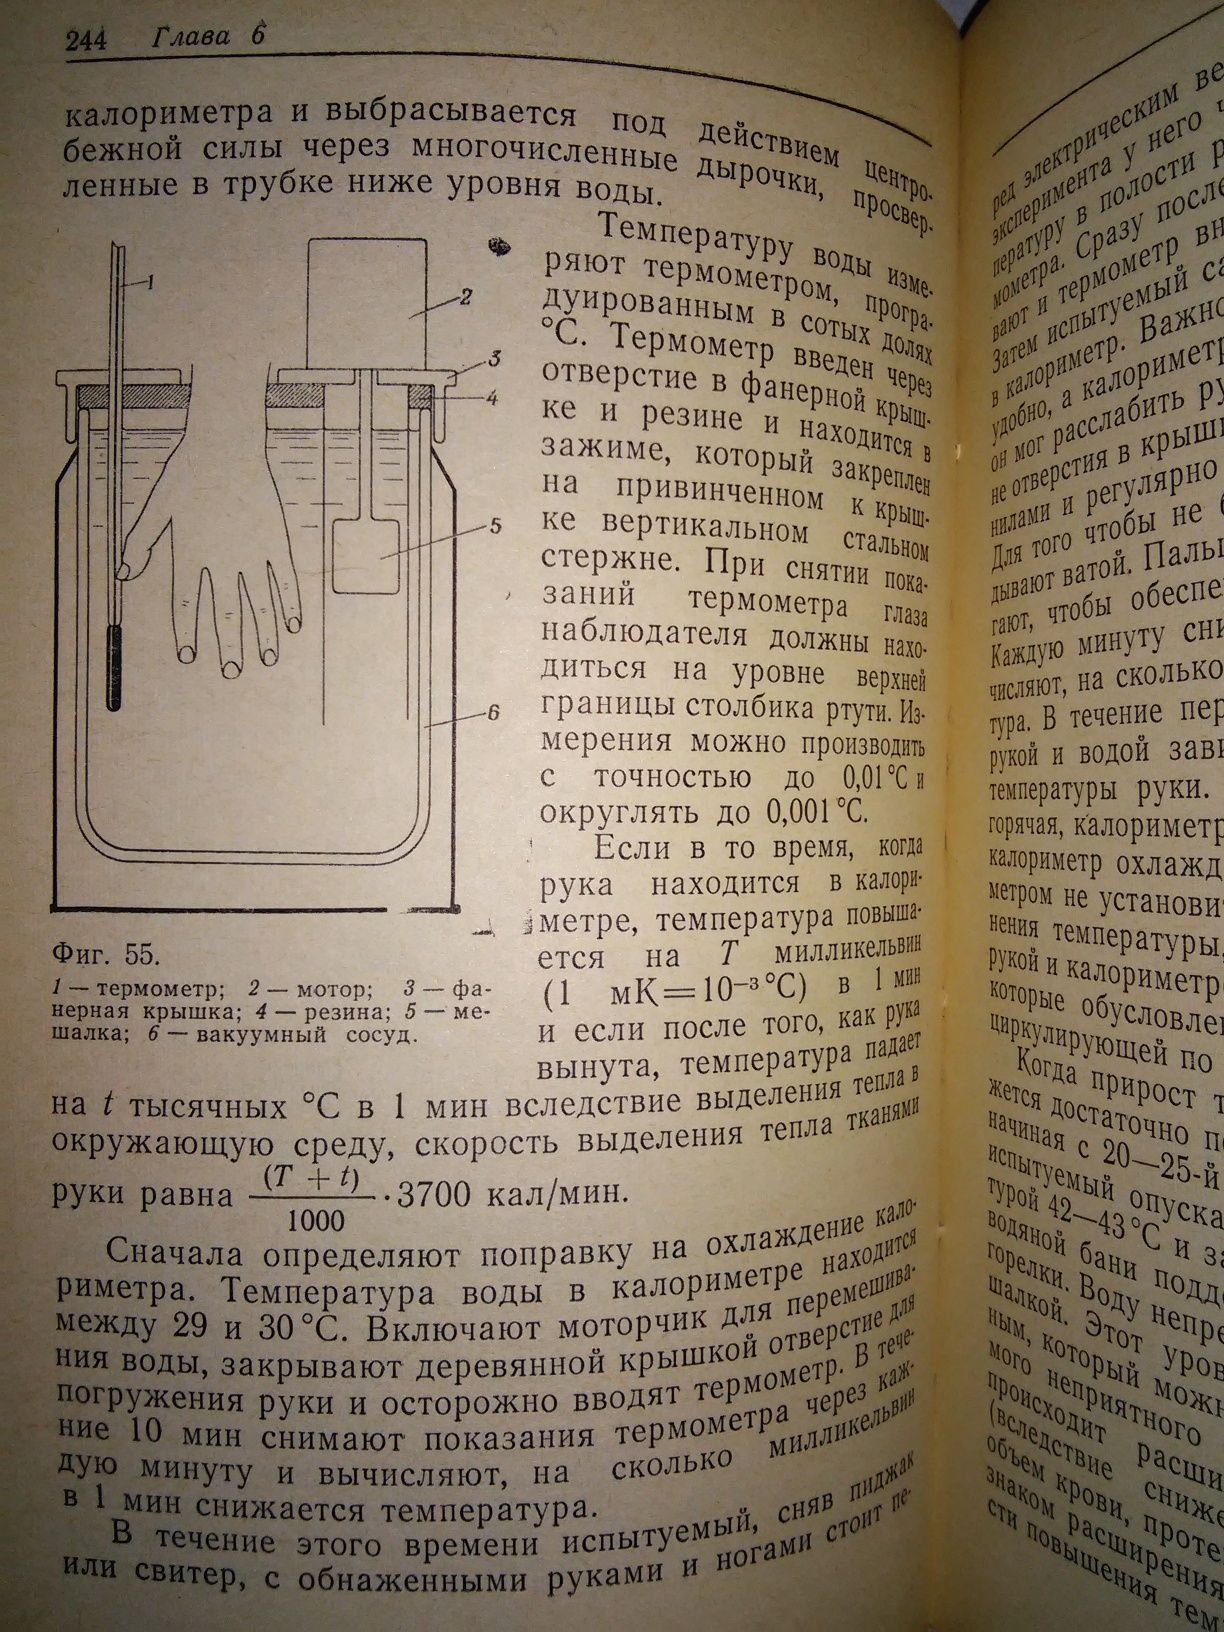 Эндрю Экспериментальная физиология 1972